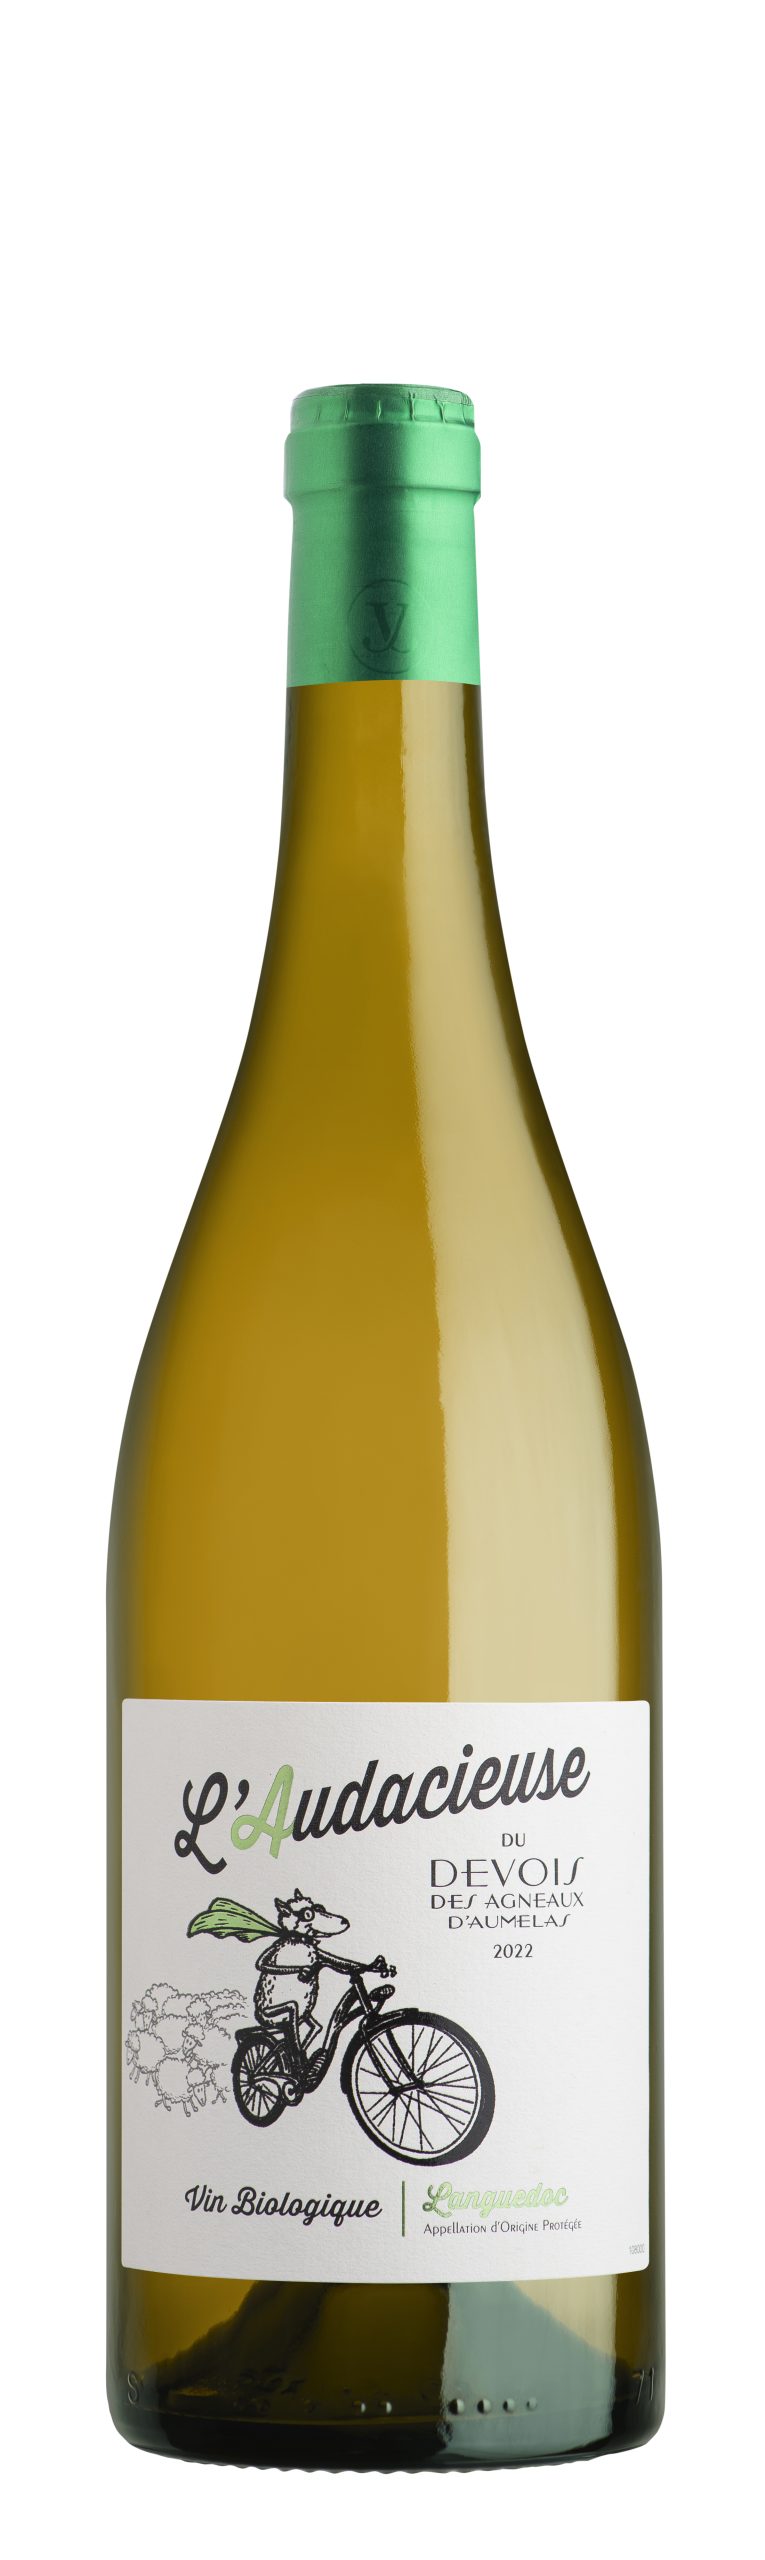 L'audacieuse vin blanc aop languedoc